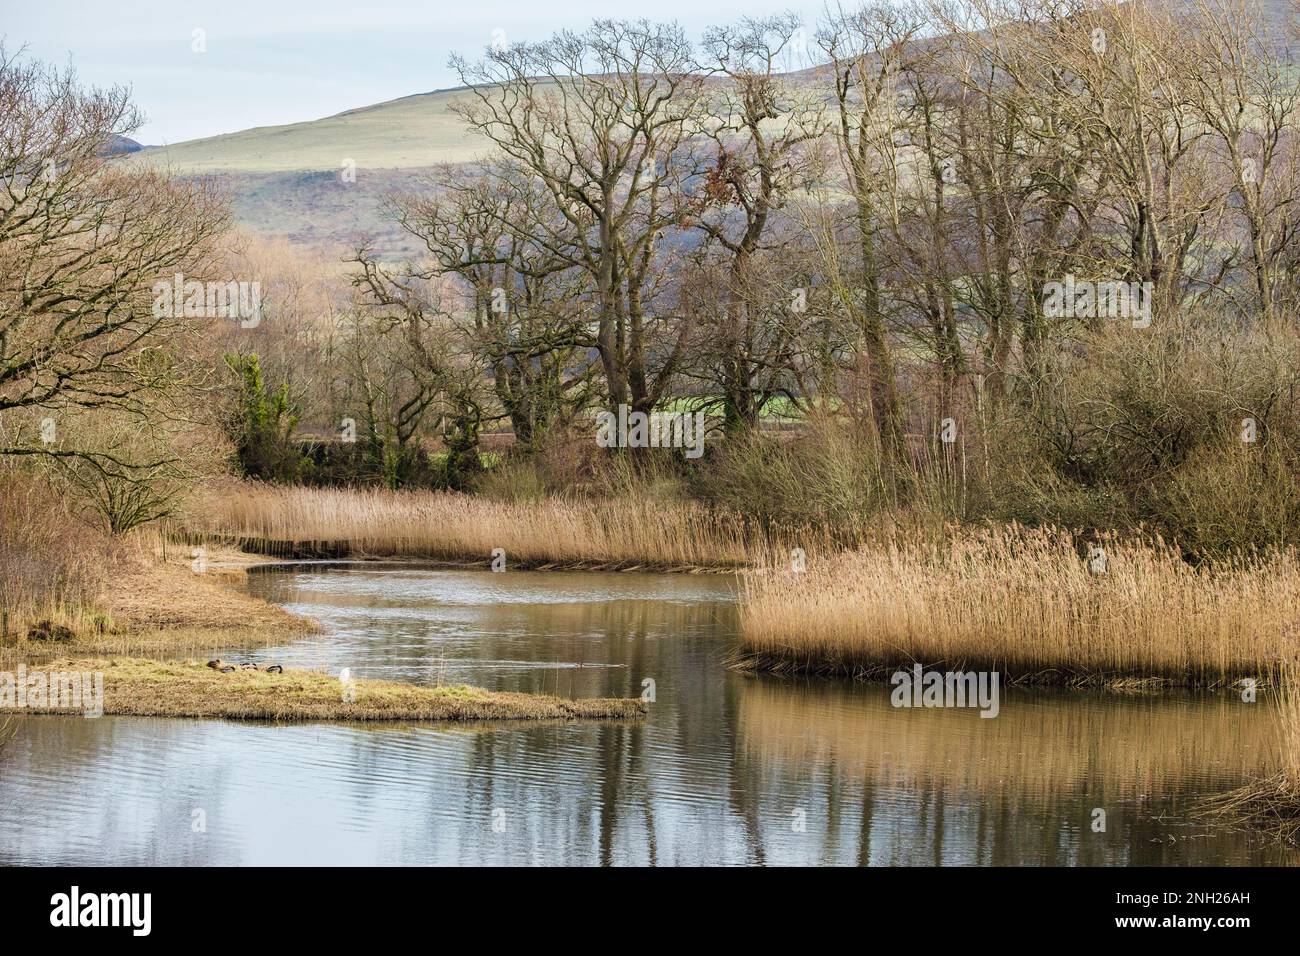 Vue sur les lagons bordés de roseaux dans la réserve naturelle. The Spinnies, Aberogwen, Bangor, Gwynedd, pays de Galles, Royaume-Uni, Grande-Bretagne Banque D'Images